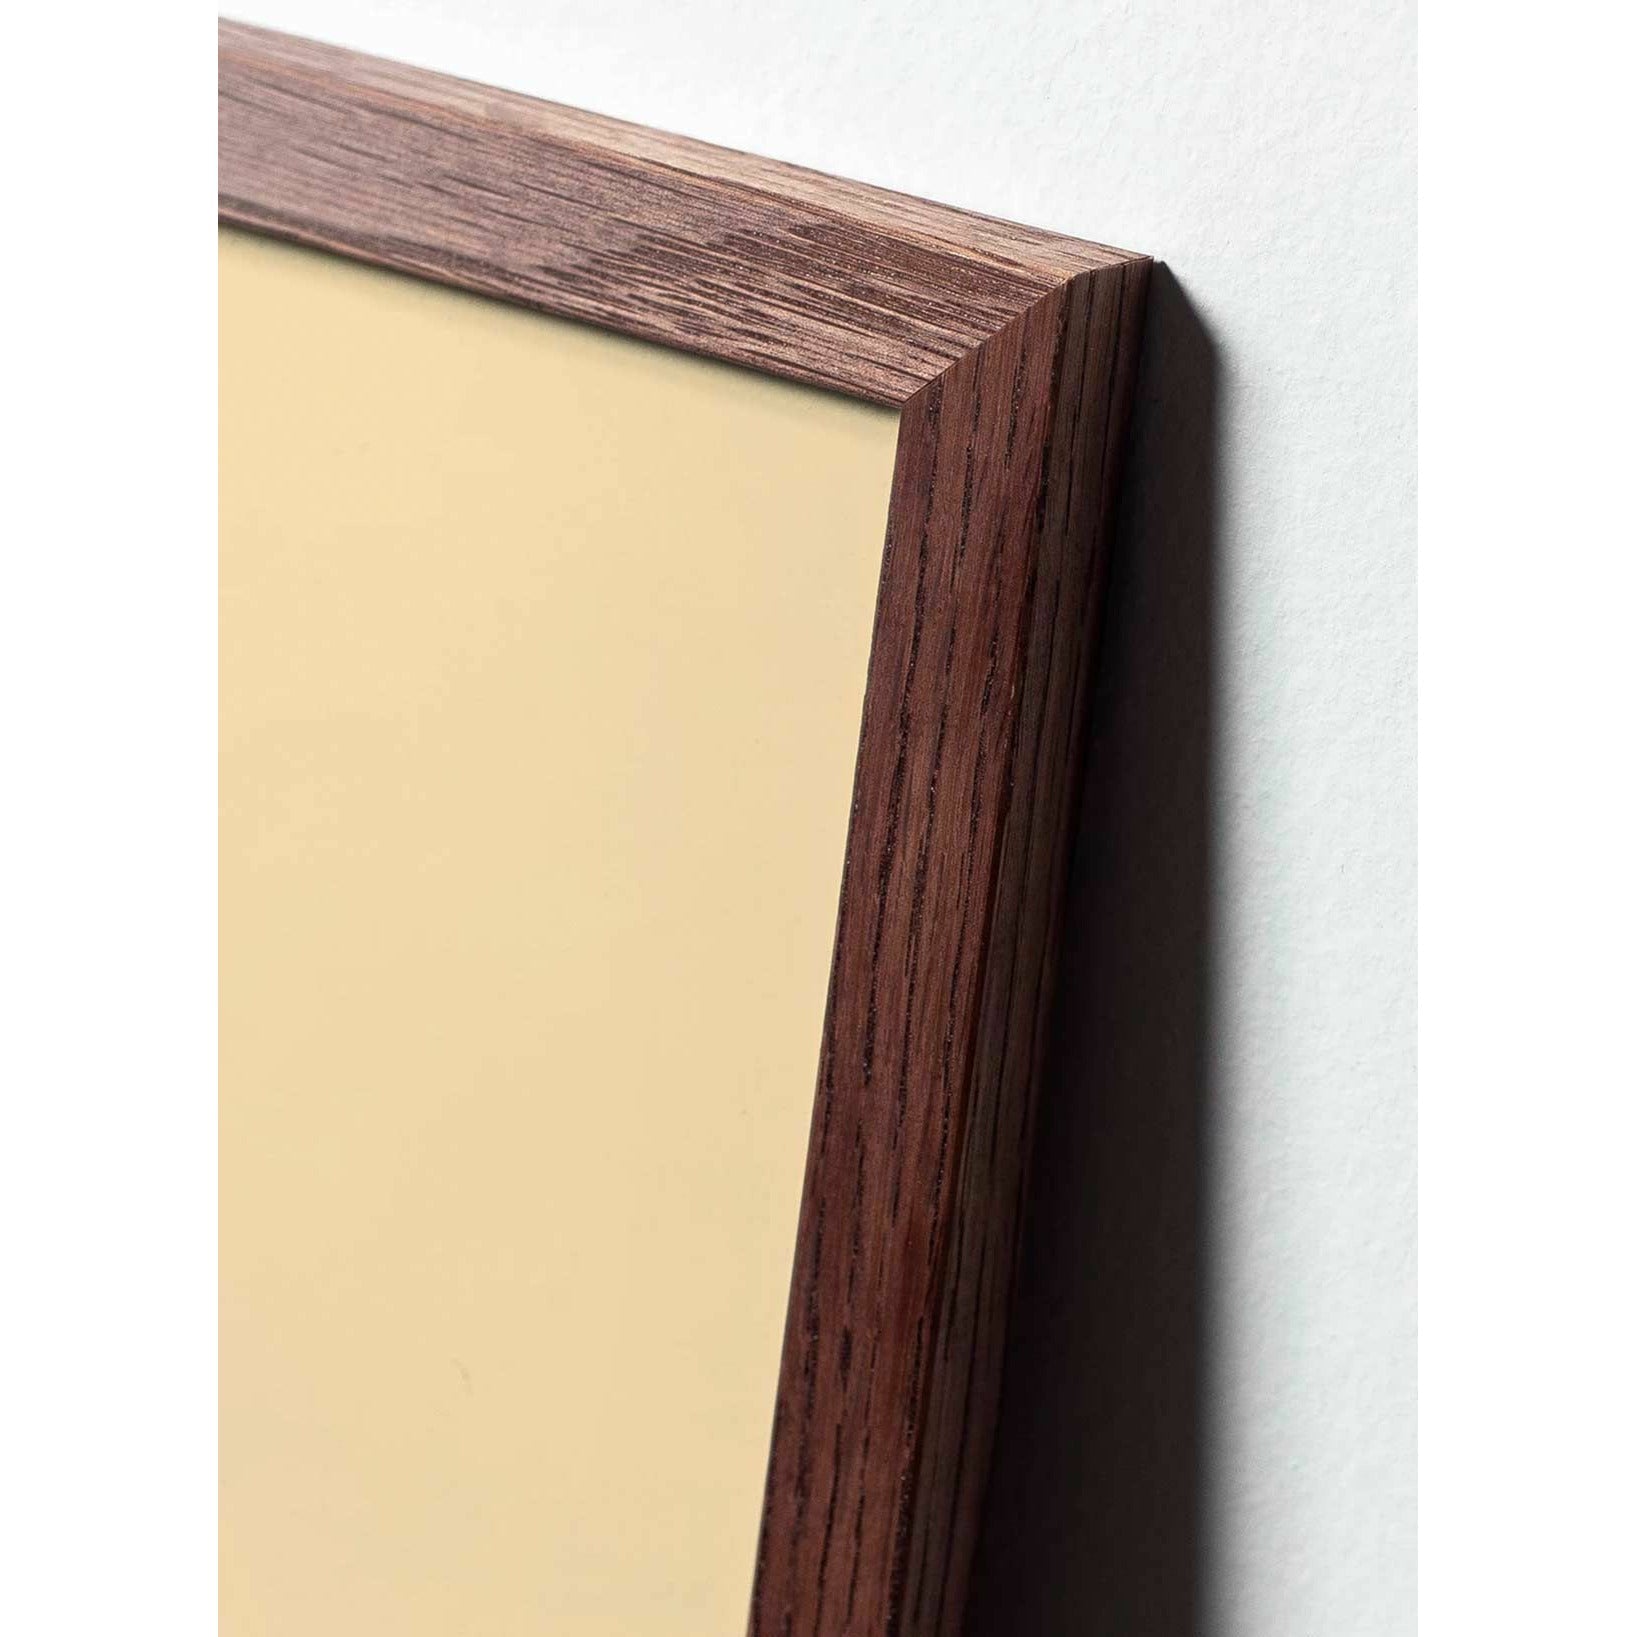 Póster de formato de cruce de huevo de creación, marco hecho de madera oscura A5, marrón